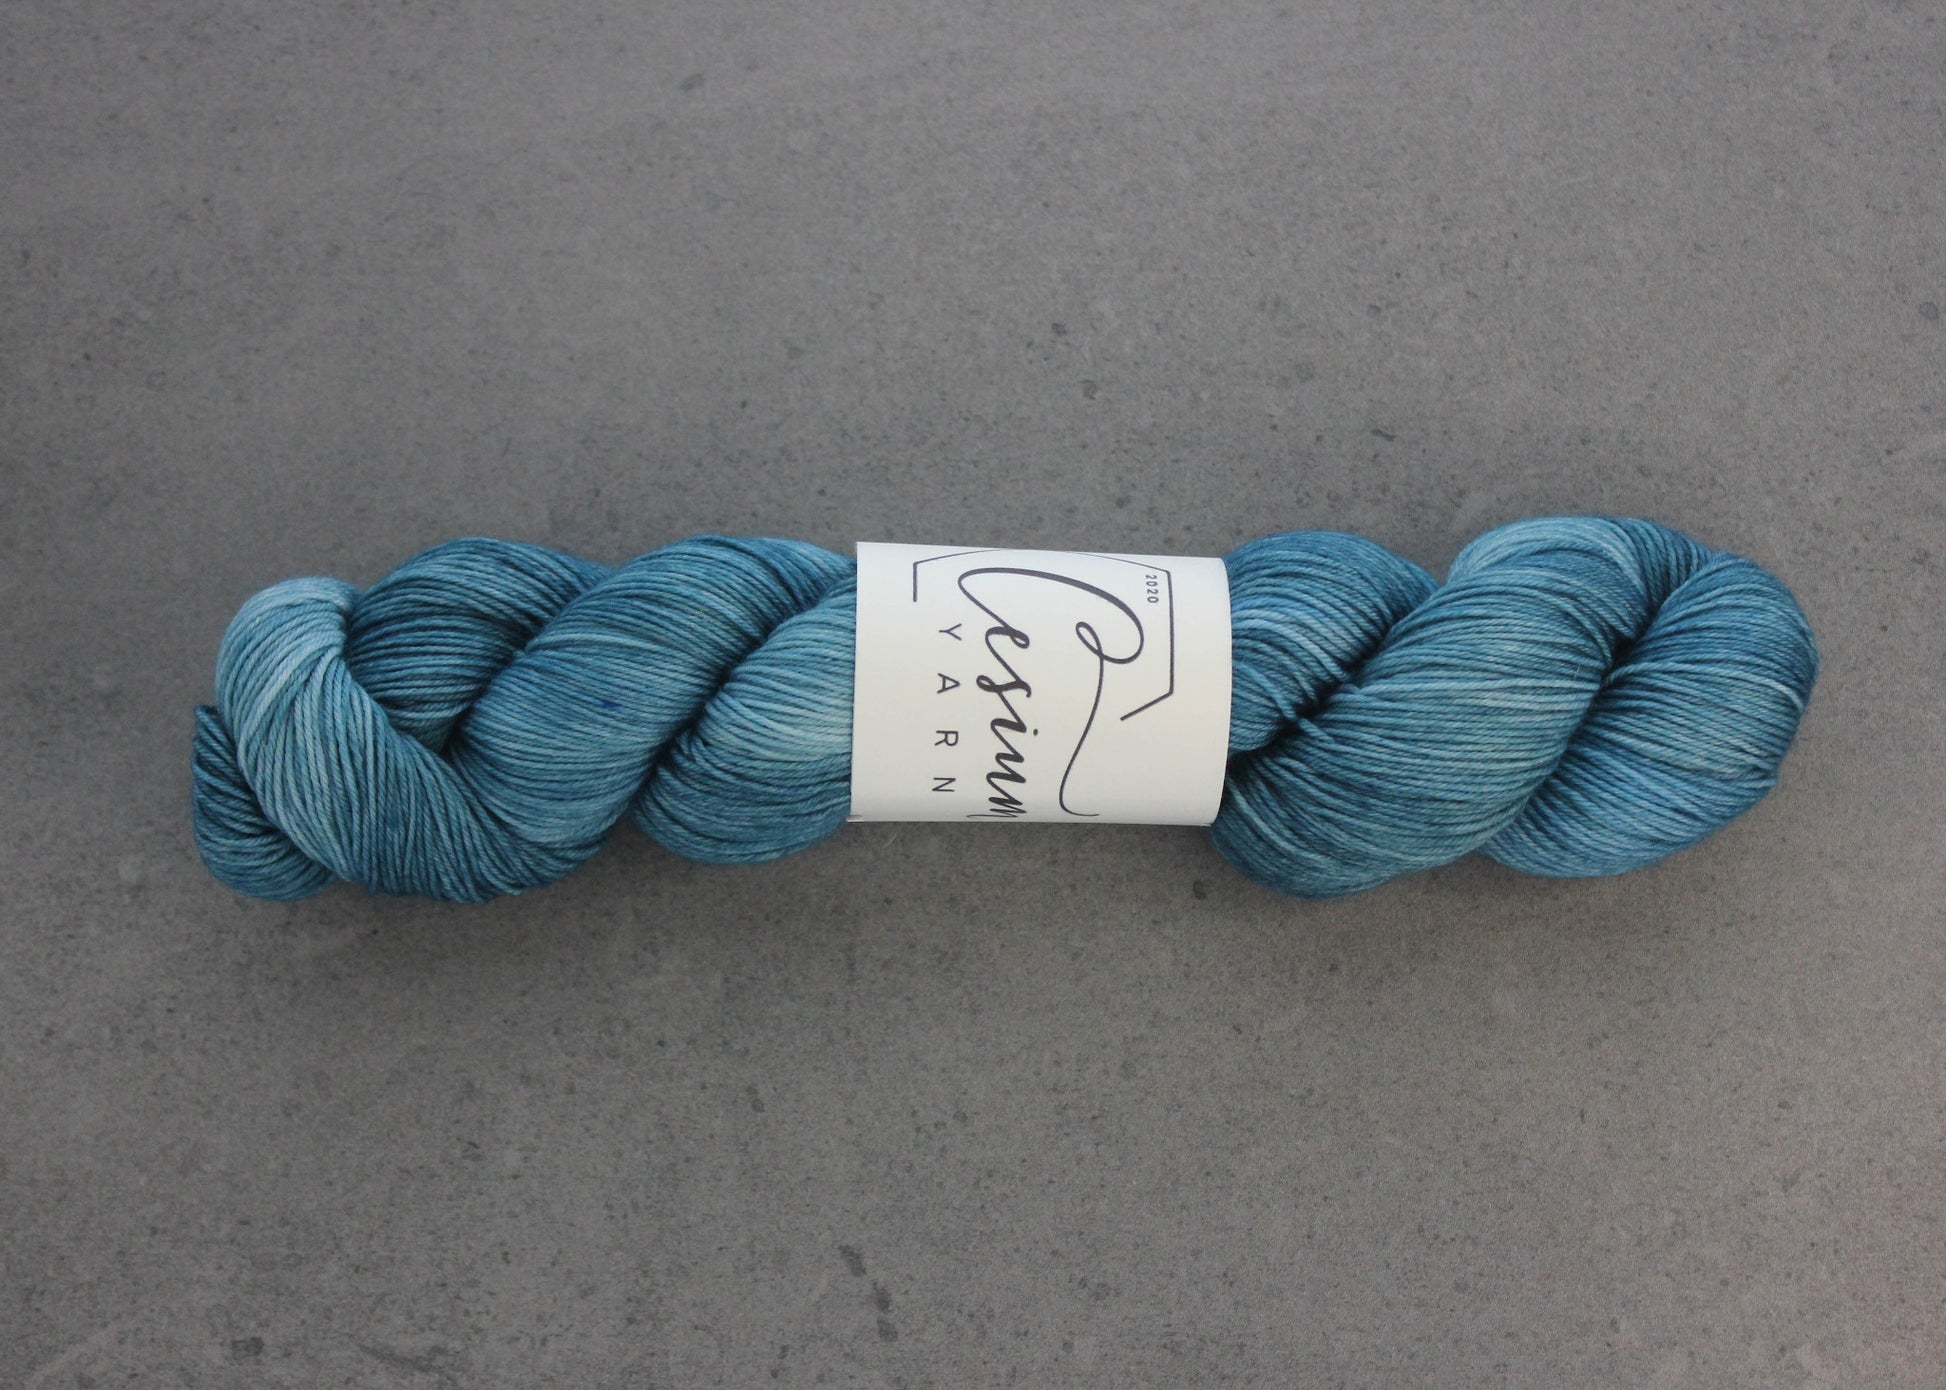 A skein of deep aqua-blue hand-dyed wool yarn.